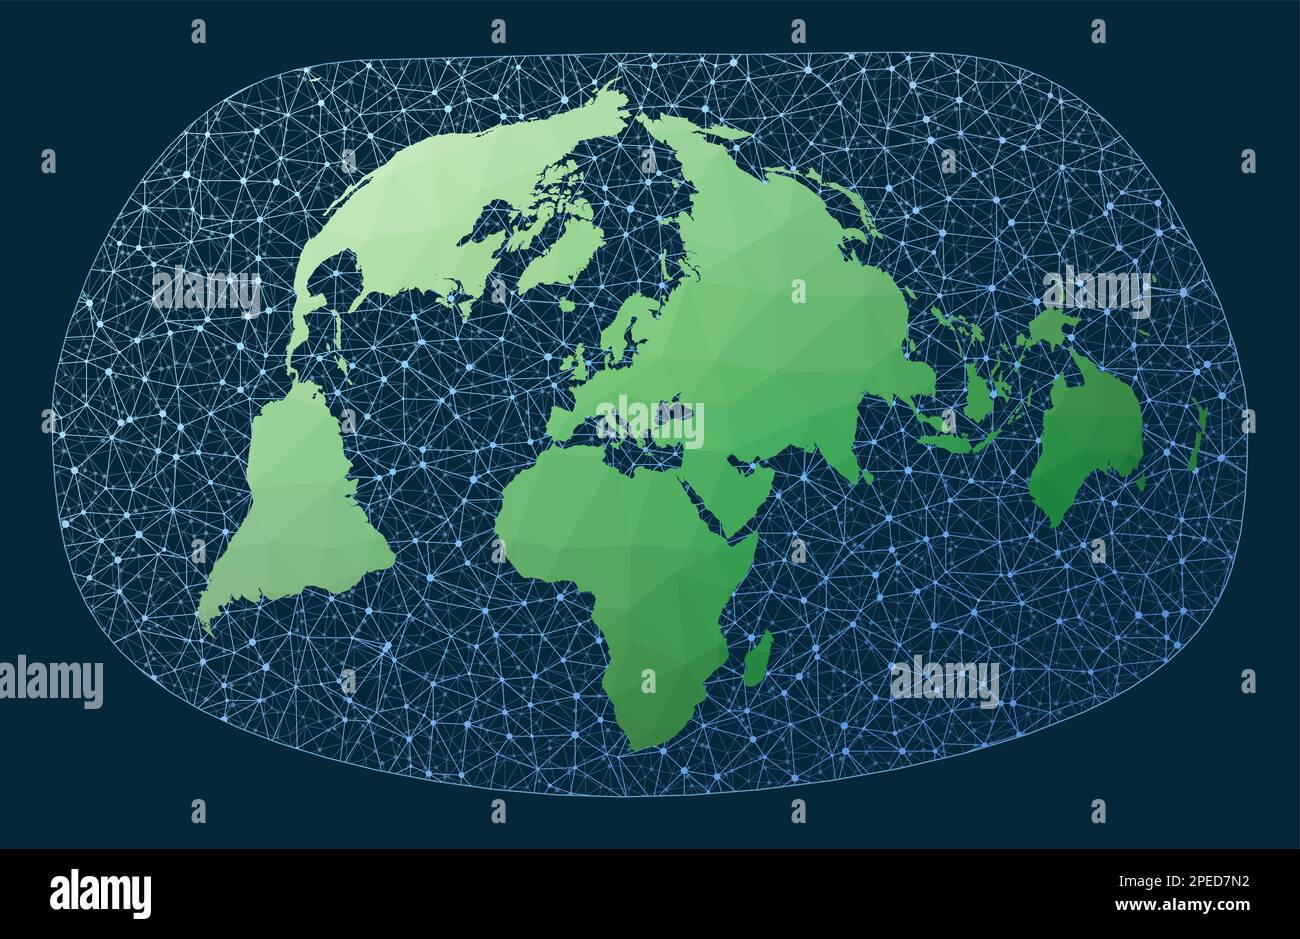 Globales Netzwerk. Bertin 1953-Projektion. Grüne, niedrige Poly-Welt-Karte mit Netzwerkhintergrund. Charmanter vernetzter Globus für Infografiken oder Präsentationen. V Stock Vektor